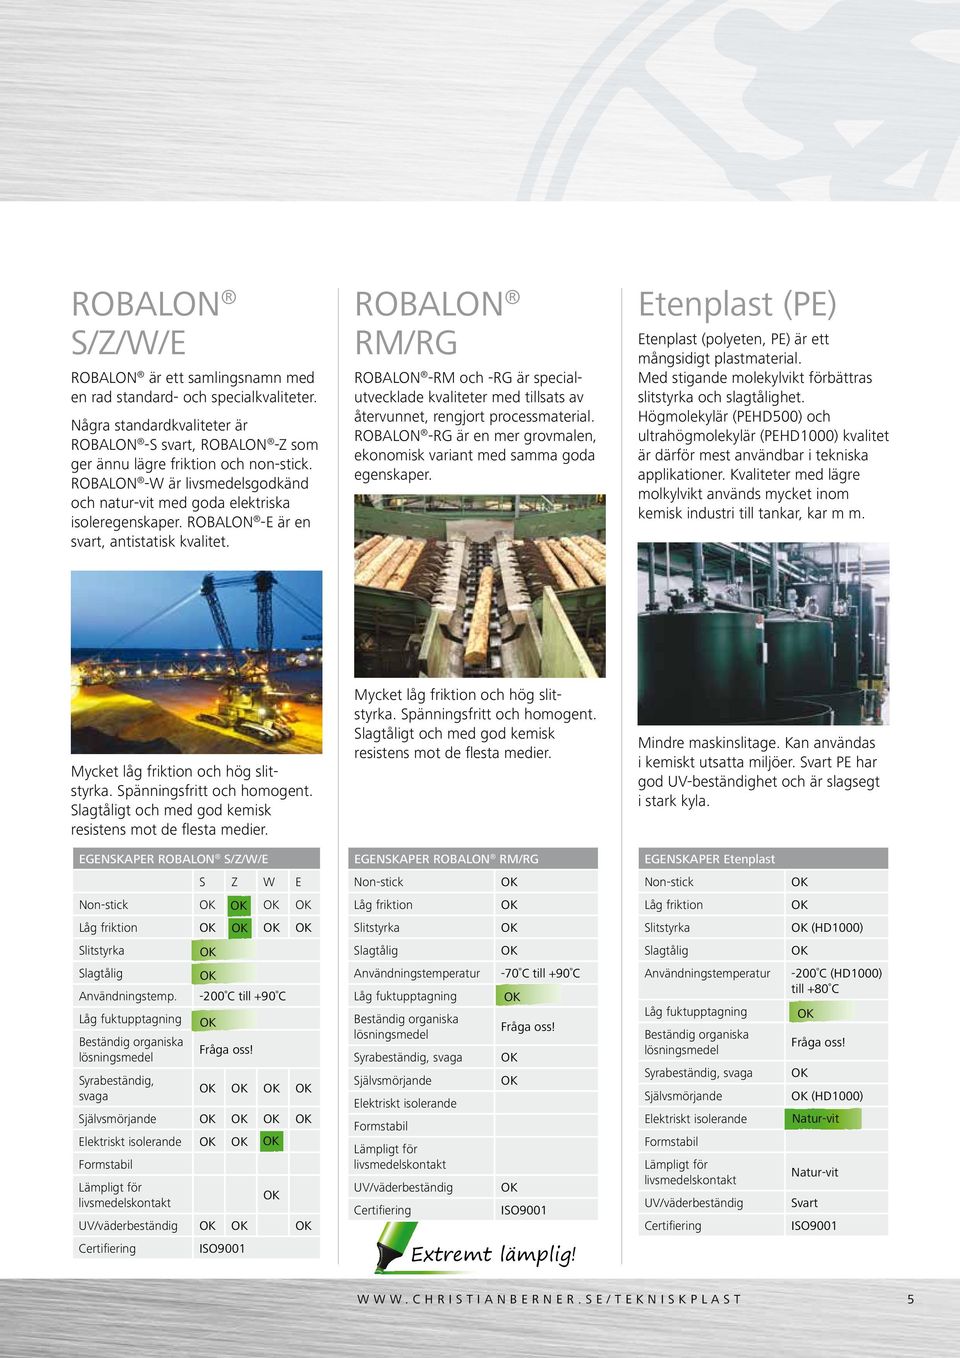 ROBALON RM/RG ROBALON -RM och -RG är specialutvecklade kvaliteter med tillsats av återvunnet, rengjort processmaterial. ROBALON -RG är en mer grovmalen, ekonomisk variant med samma goda egenskaper.